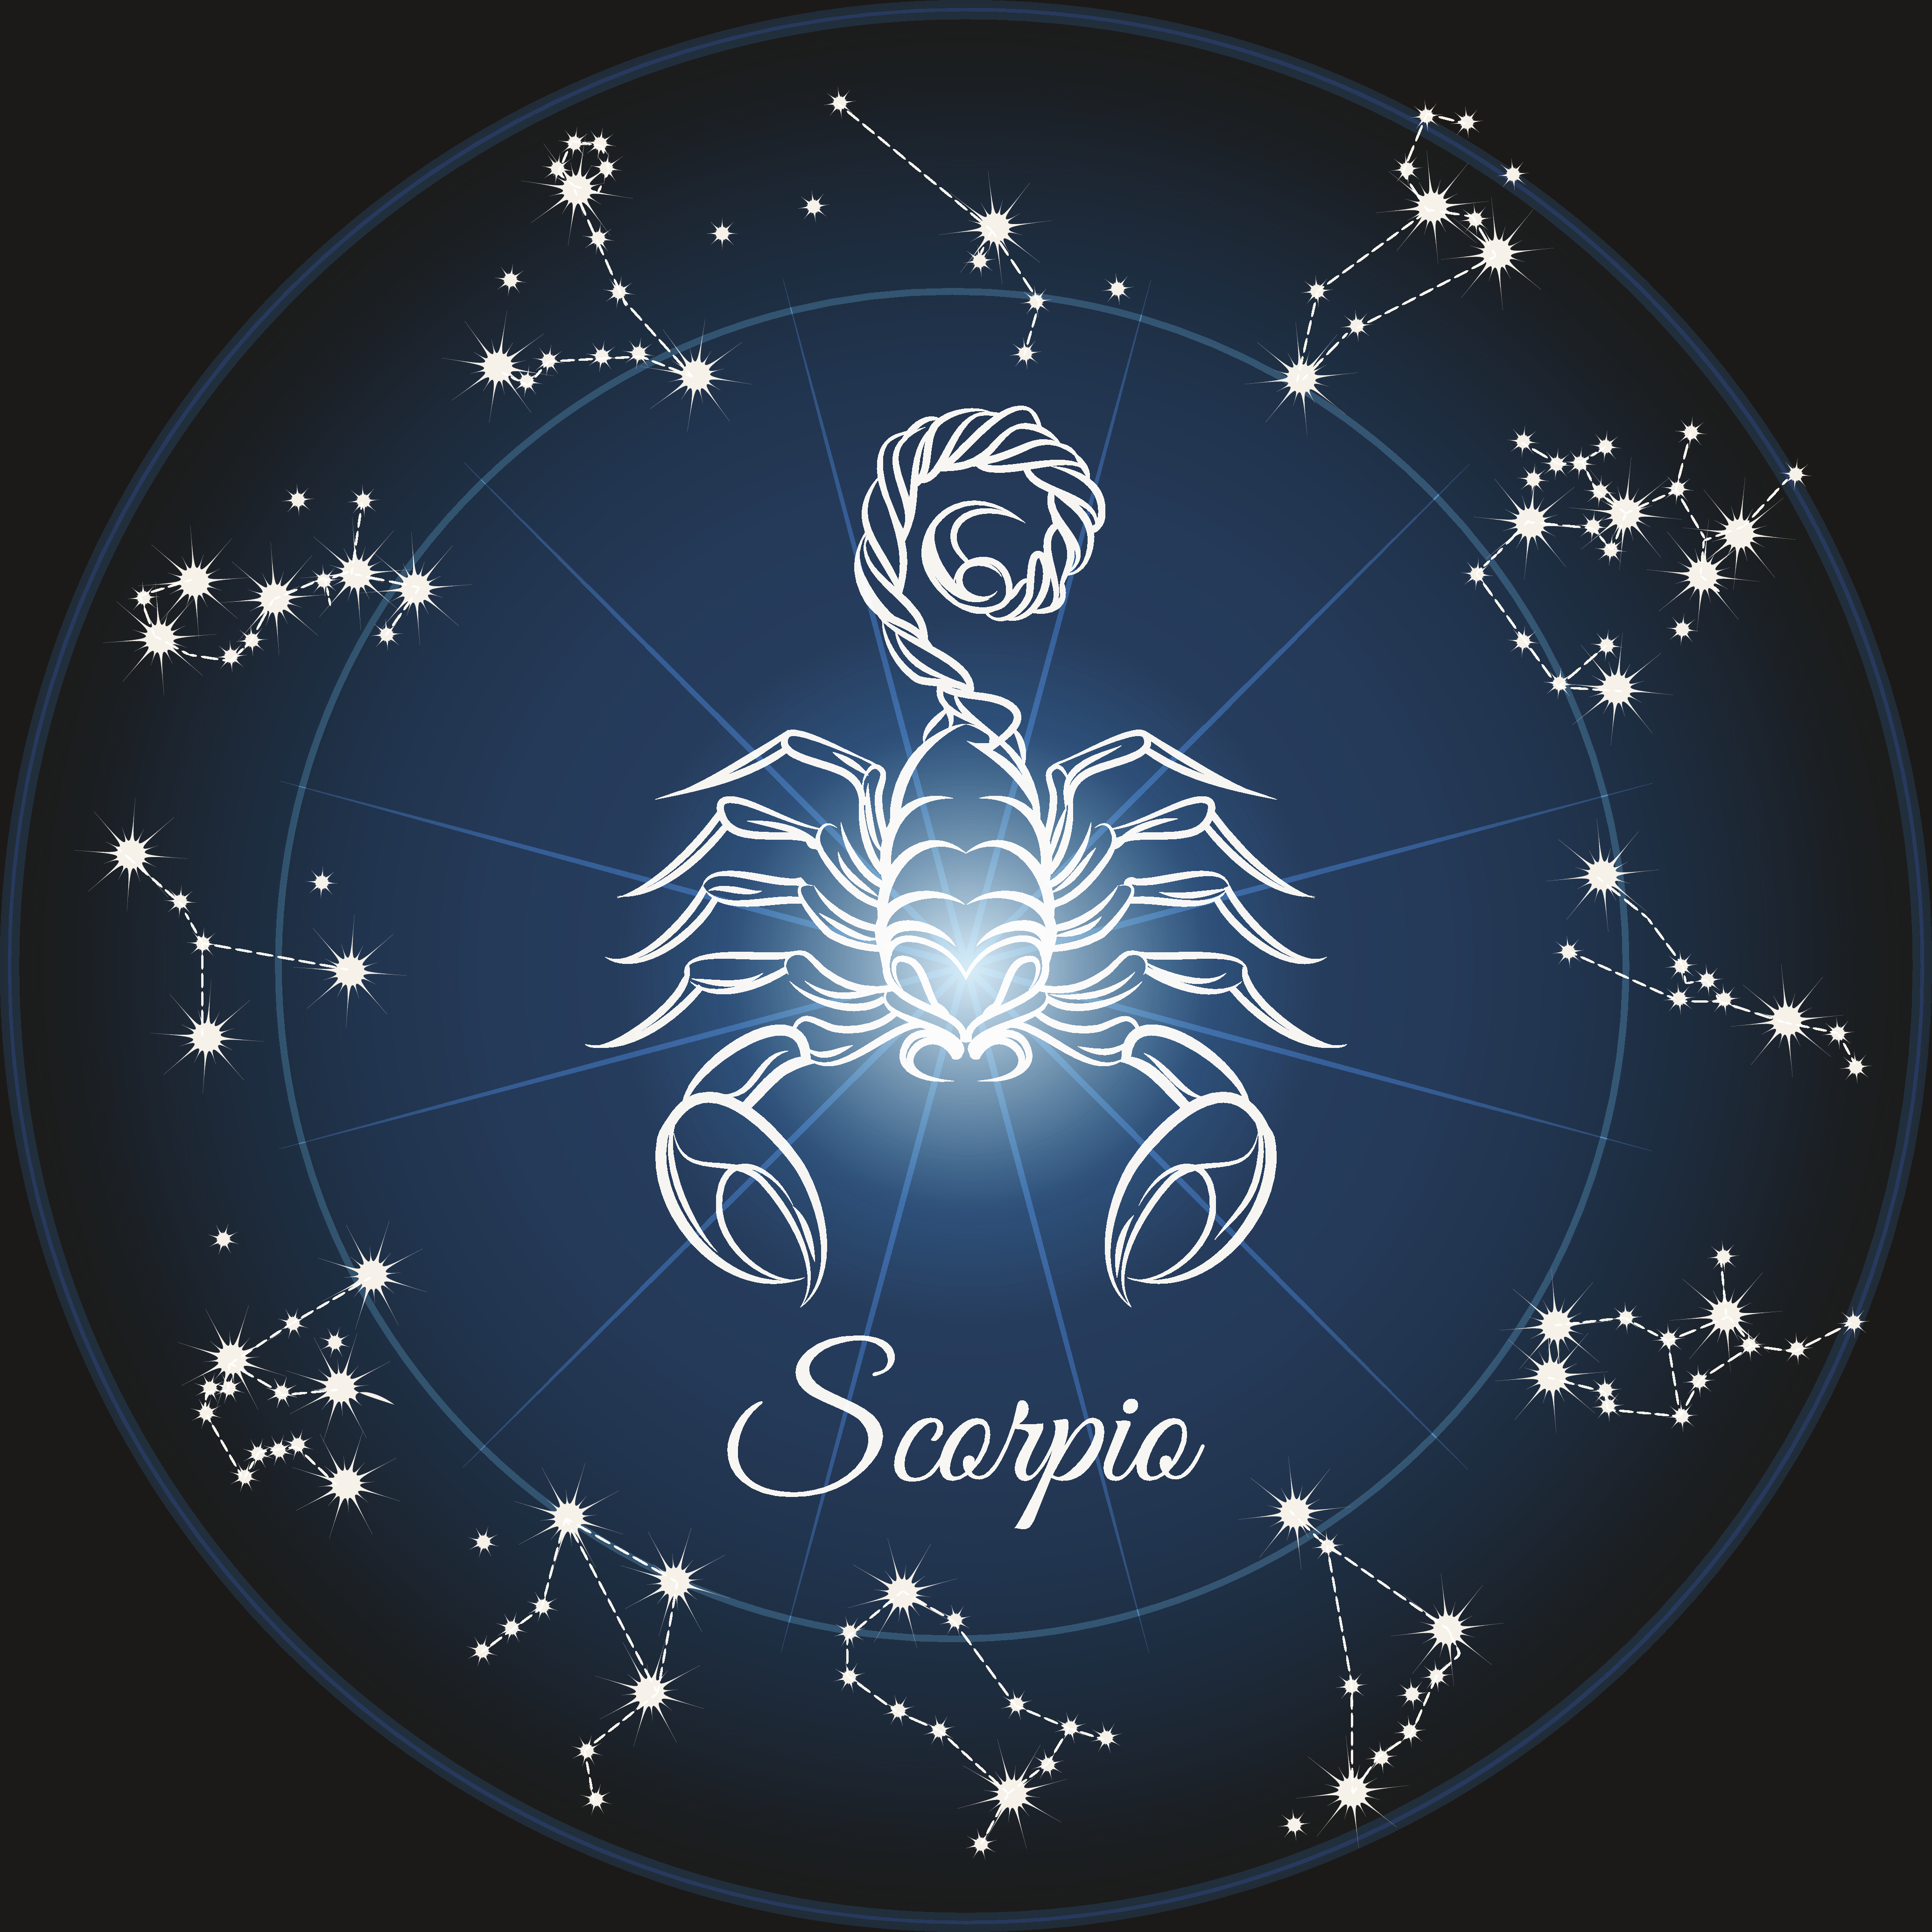 Scorpio Zodiac Sign Picture - KibrisPDR